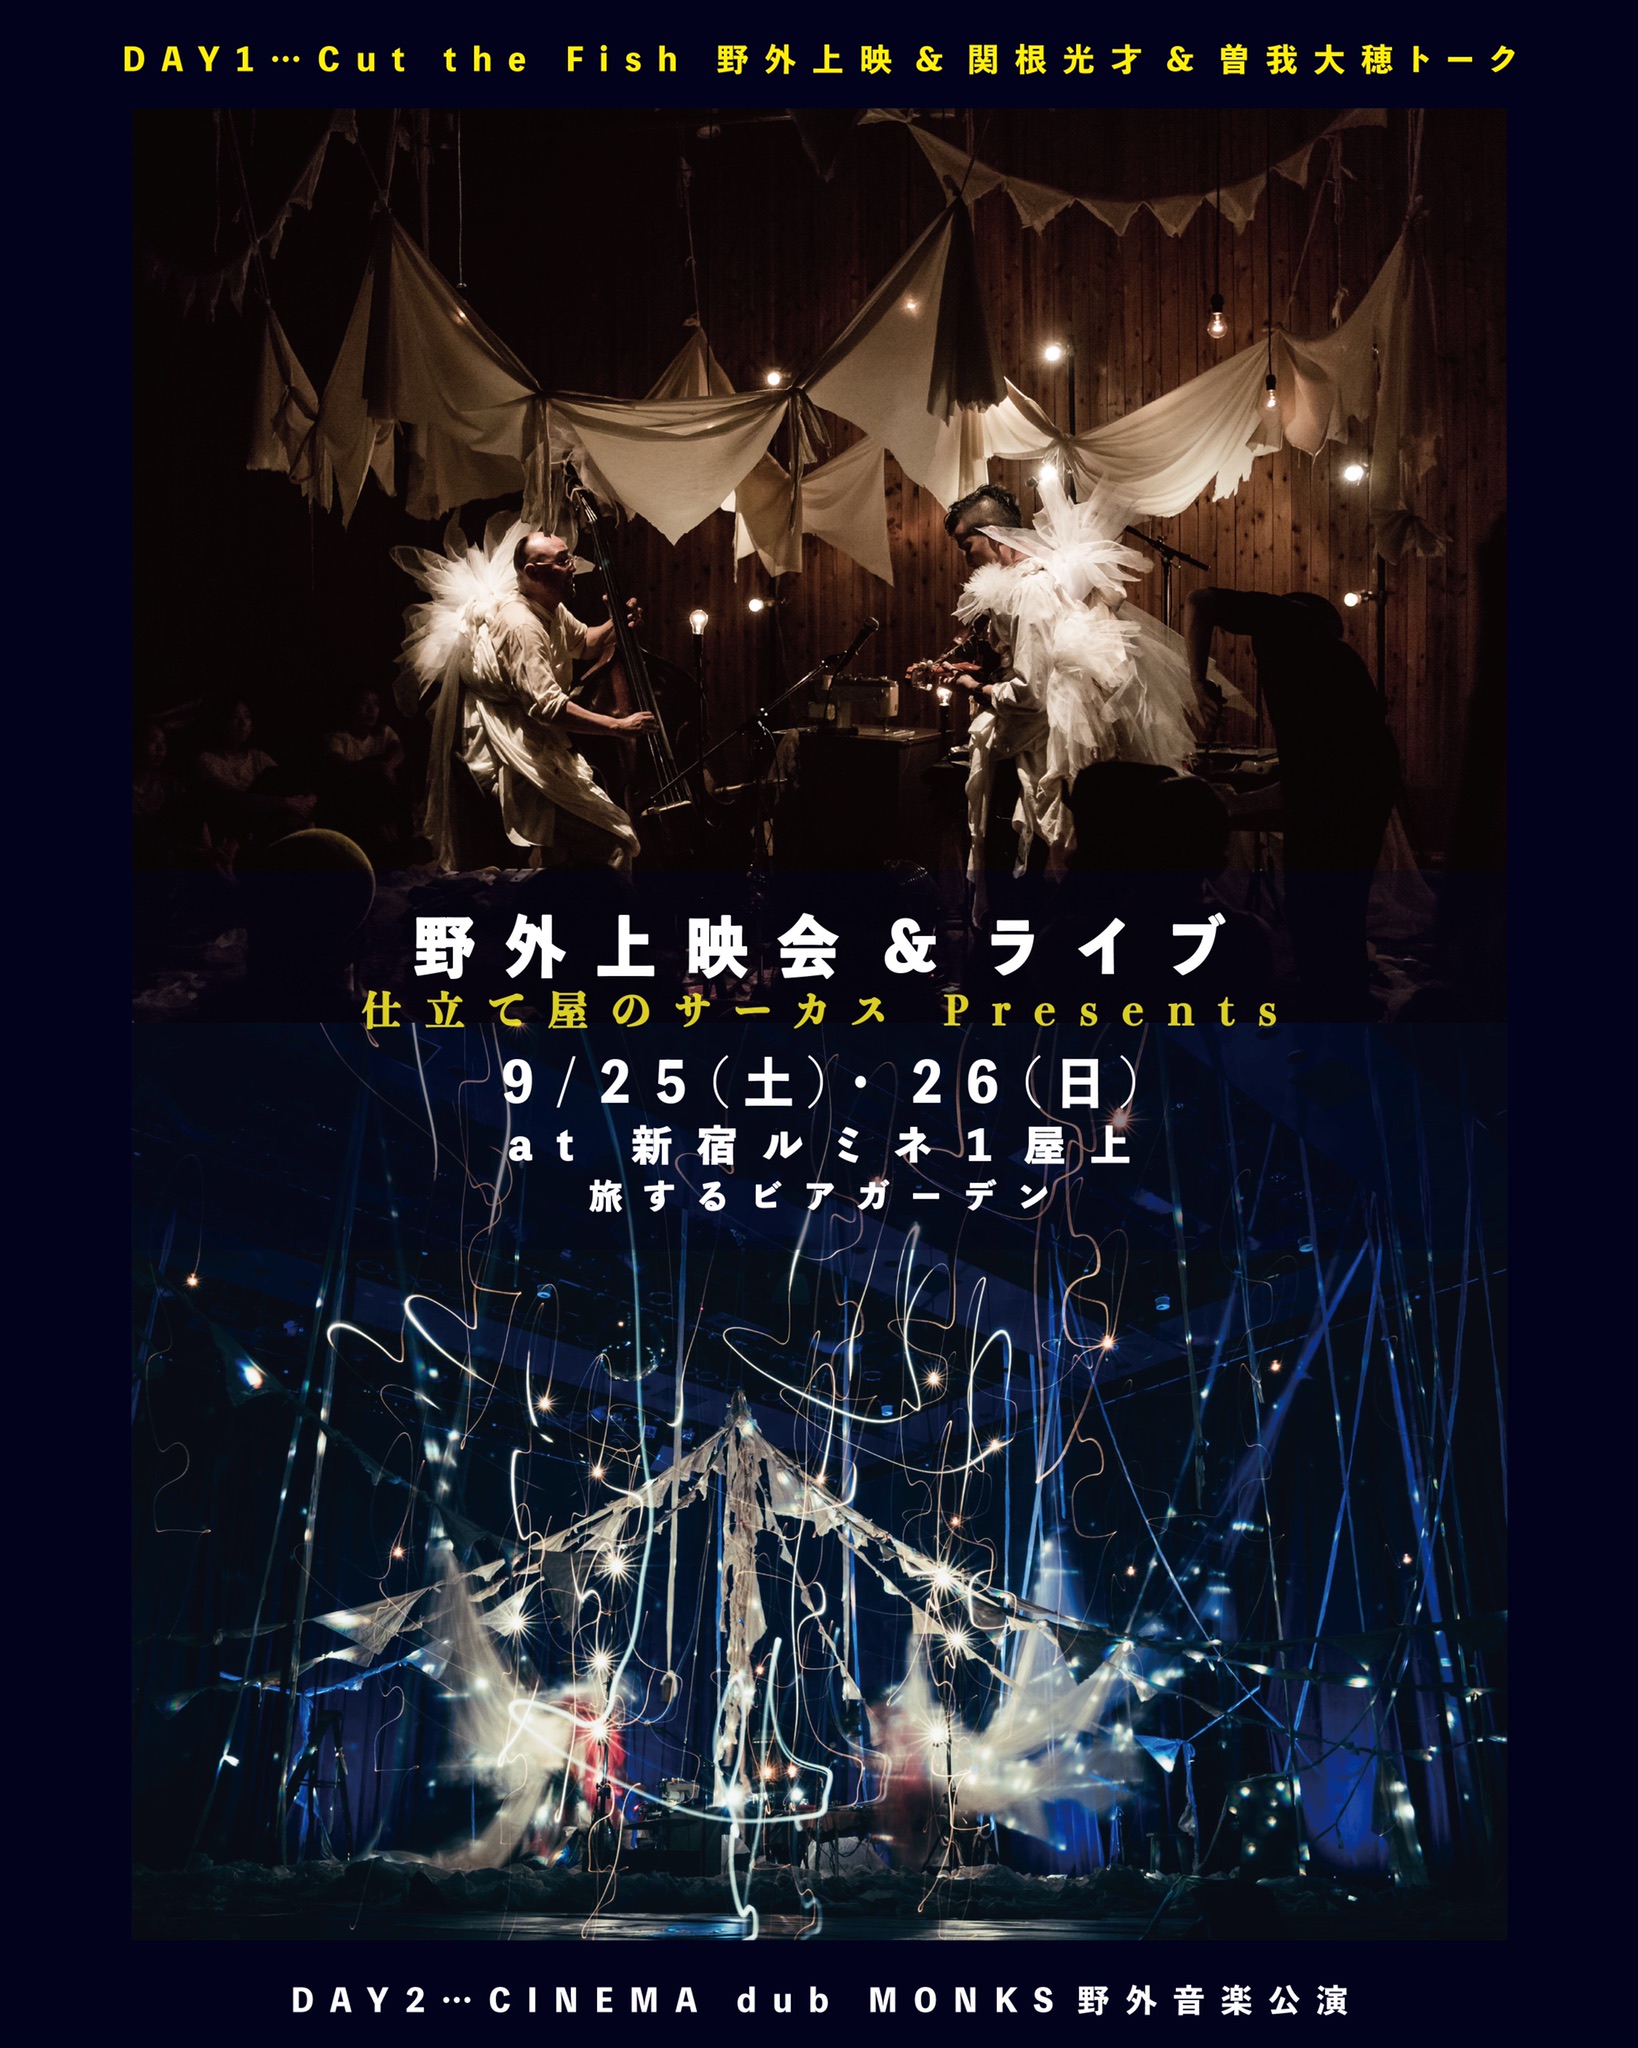 9/26(日) 「二日目」CINEMA dub MONKS LIVE ( 仕立て屋のサーカスpresents " ライブ " )